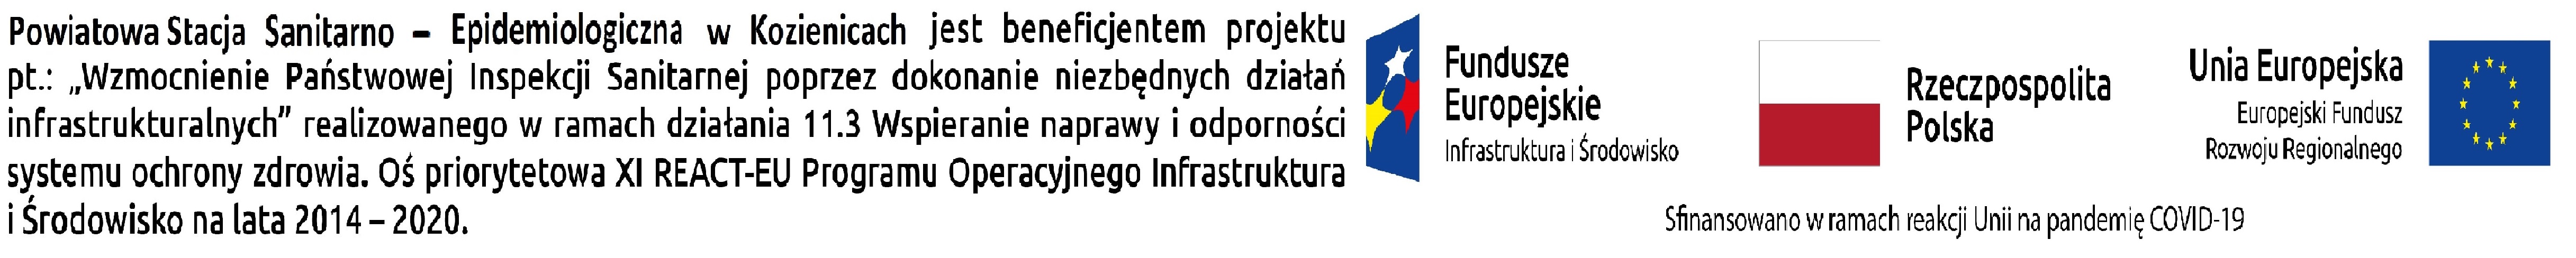 Logotypy Funduszy Europejskich, RP i UE